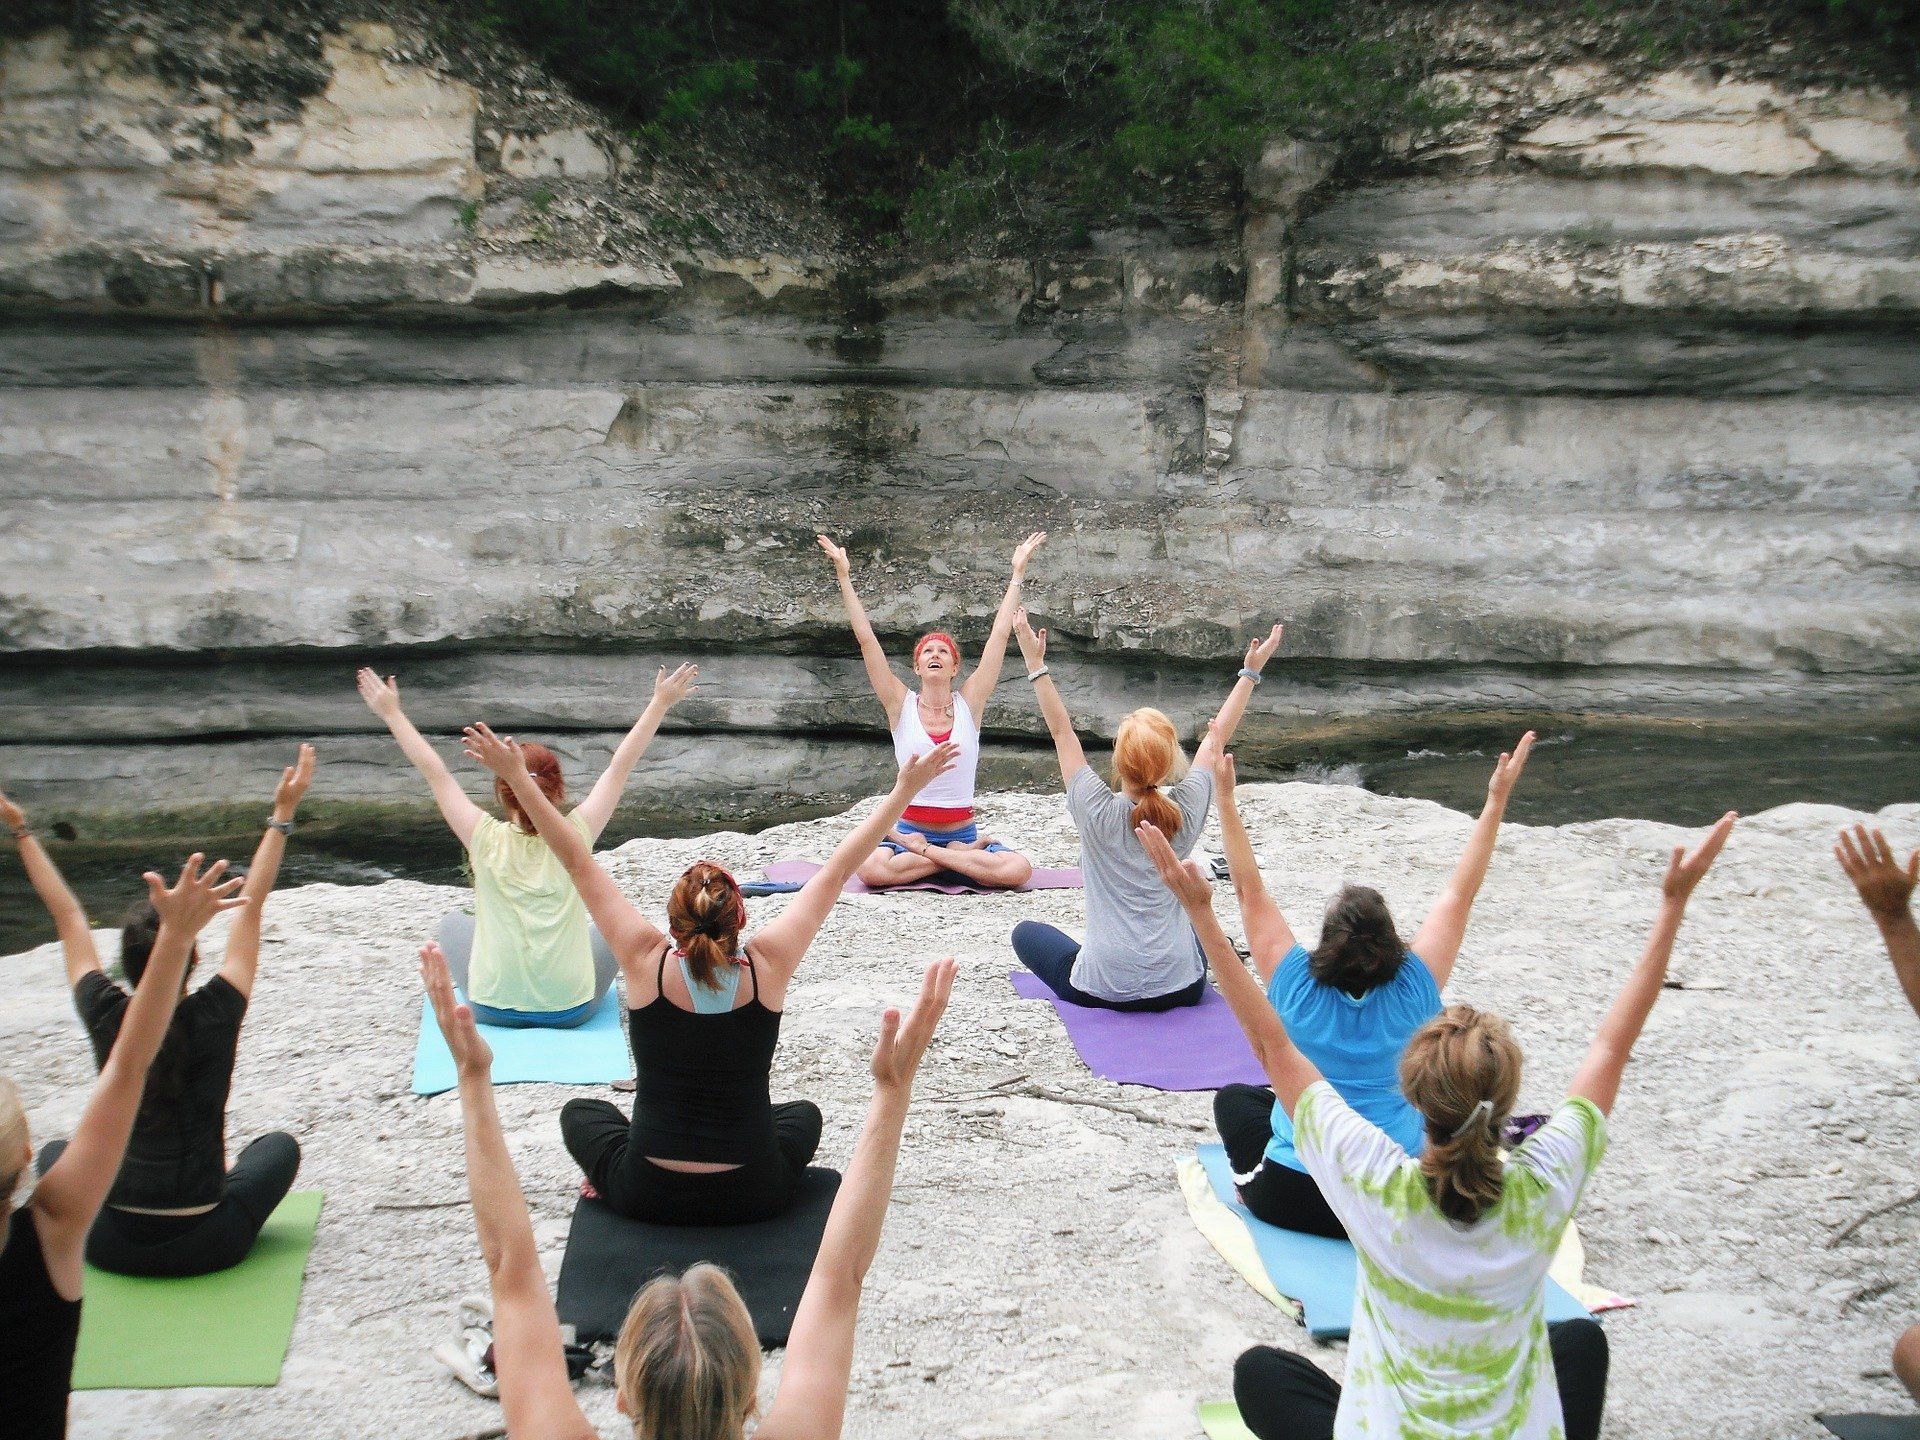 Être professeur de yoga, c'est aussi exercer dans des lieux façonnés par la Nature.